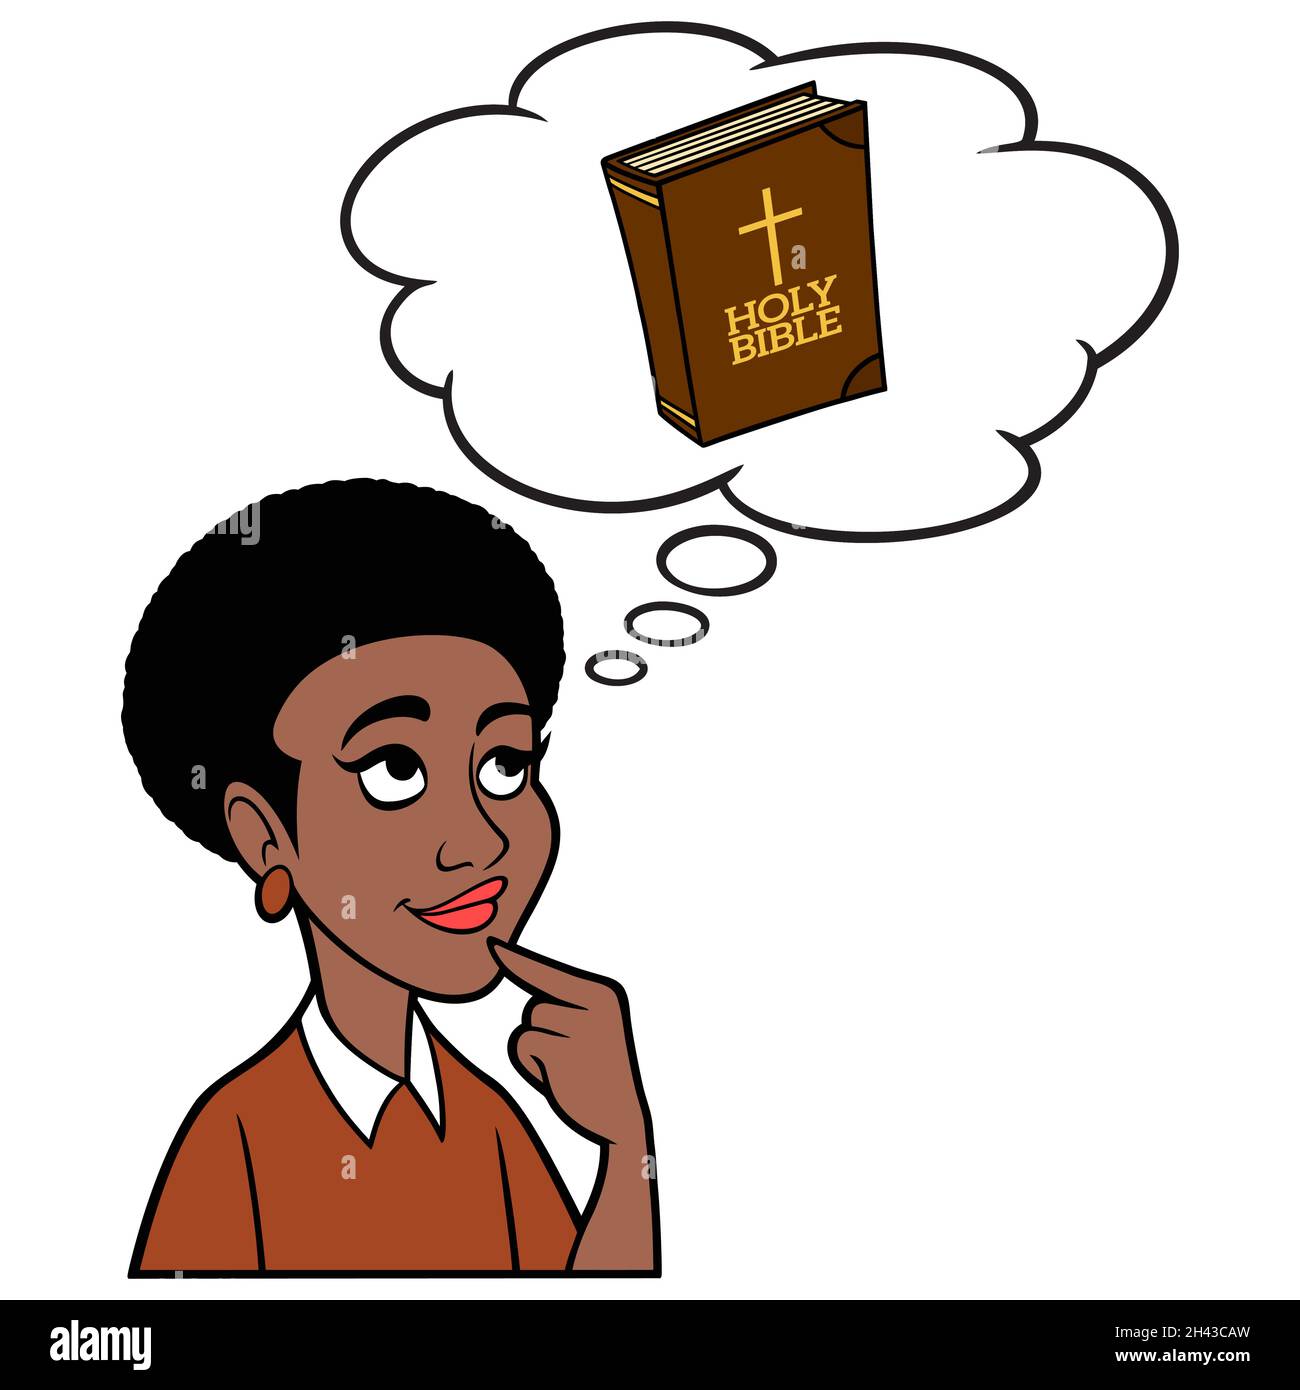 Donna che pensa a un versetto della Bibbia - un'illustrazione di un fumetto di una donna che pensa a un versetto della Bibbia. Illustrazione Vettoriale